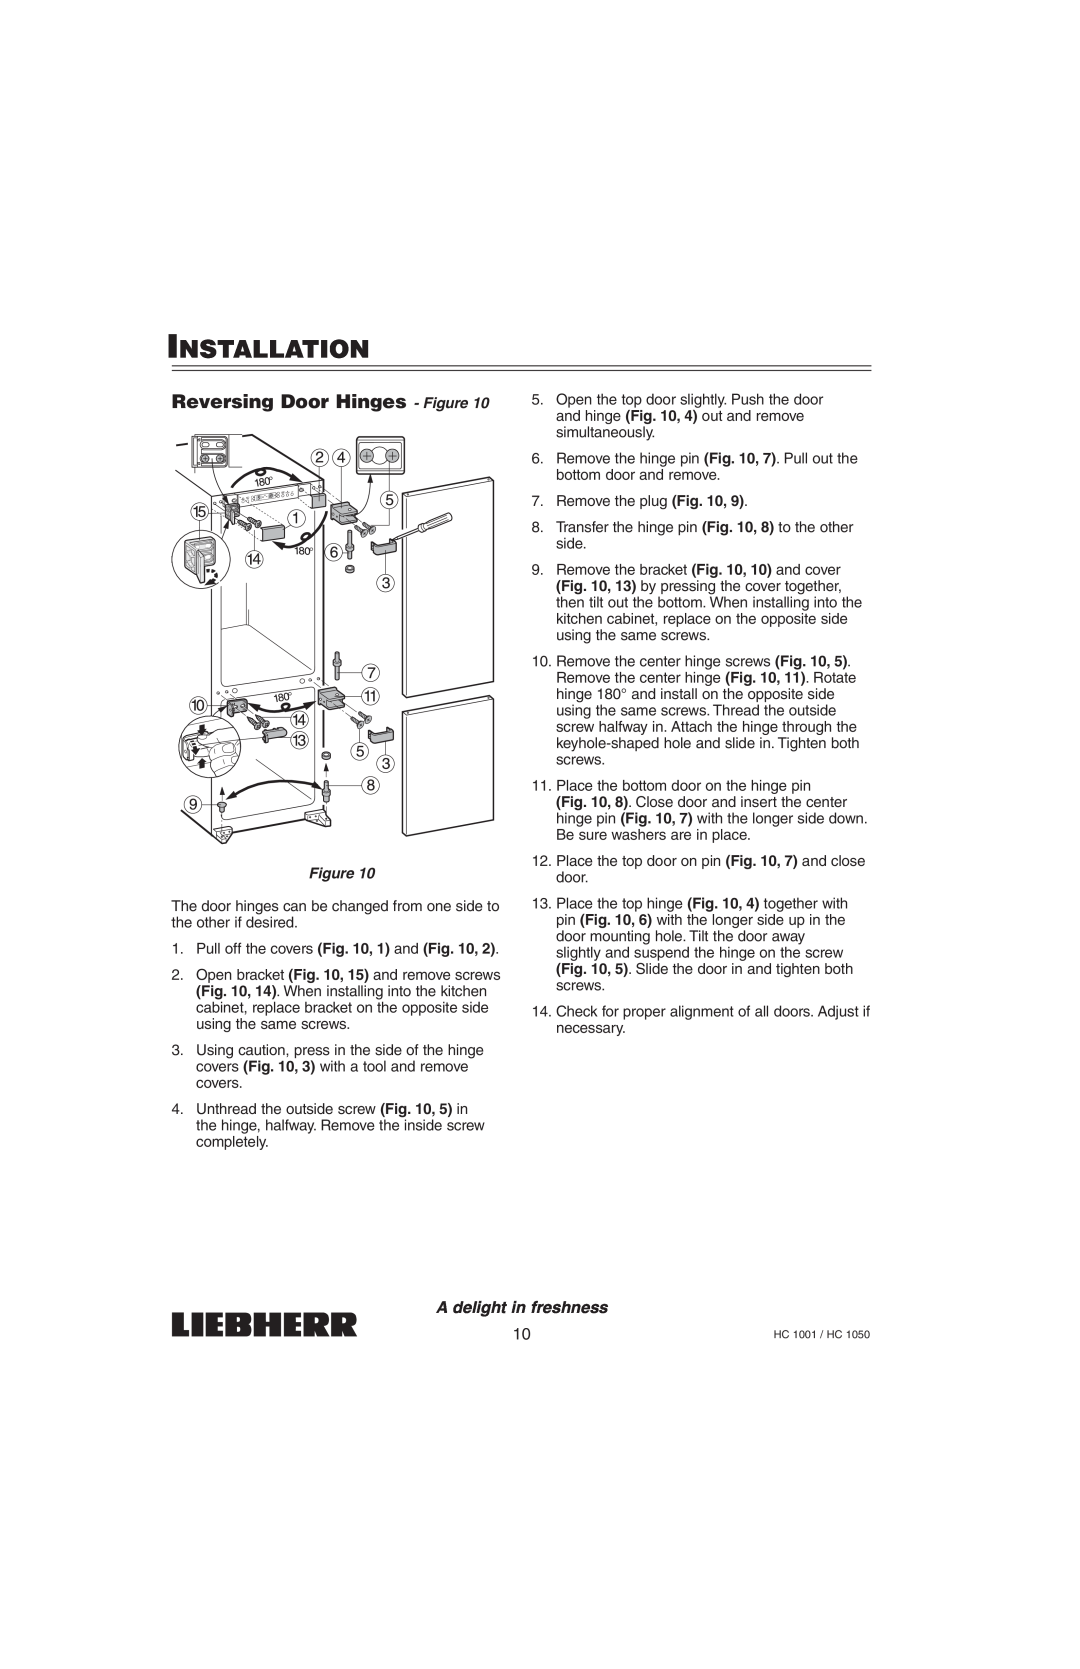 Liebherr HC1001, HC1050 installation manual Reversing Door Hinges - Figure, Installation, A delight in freshness 